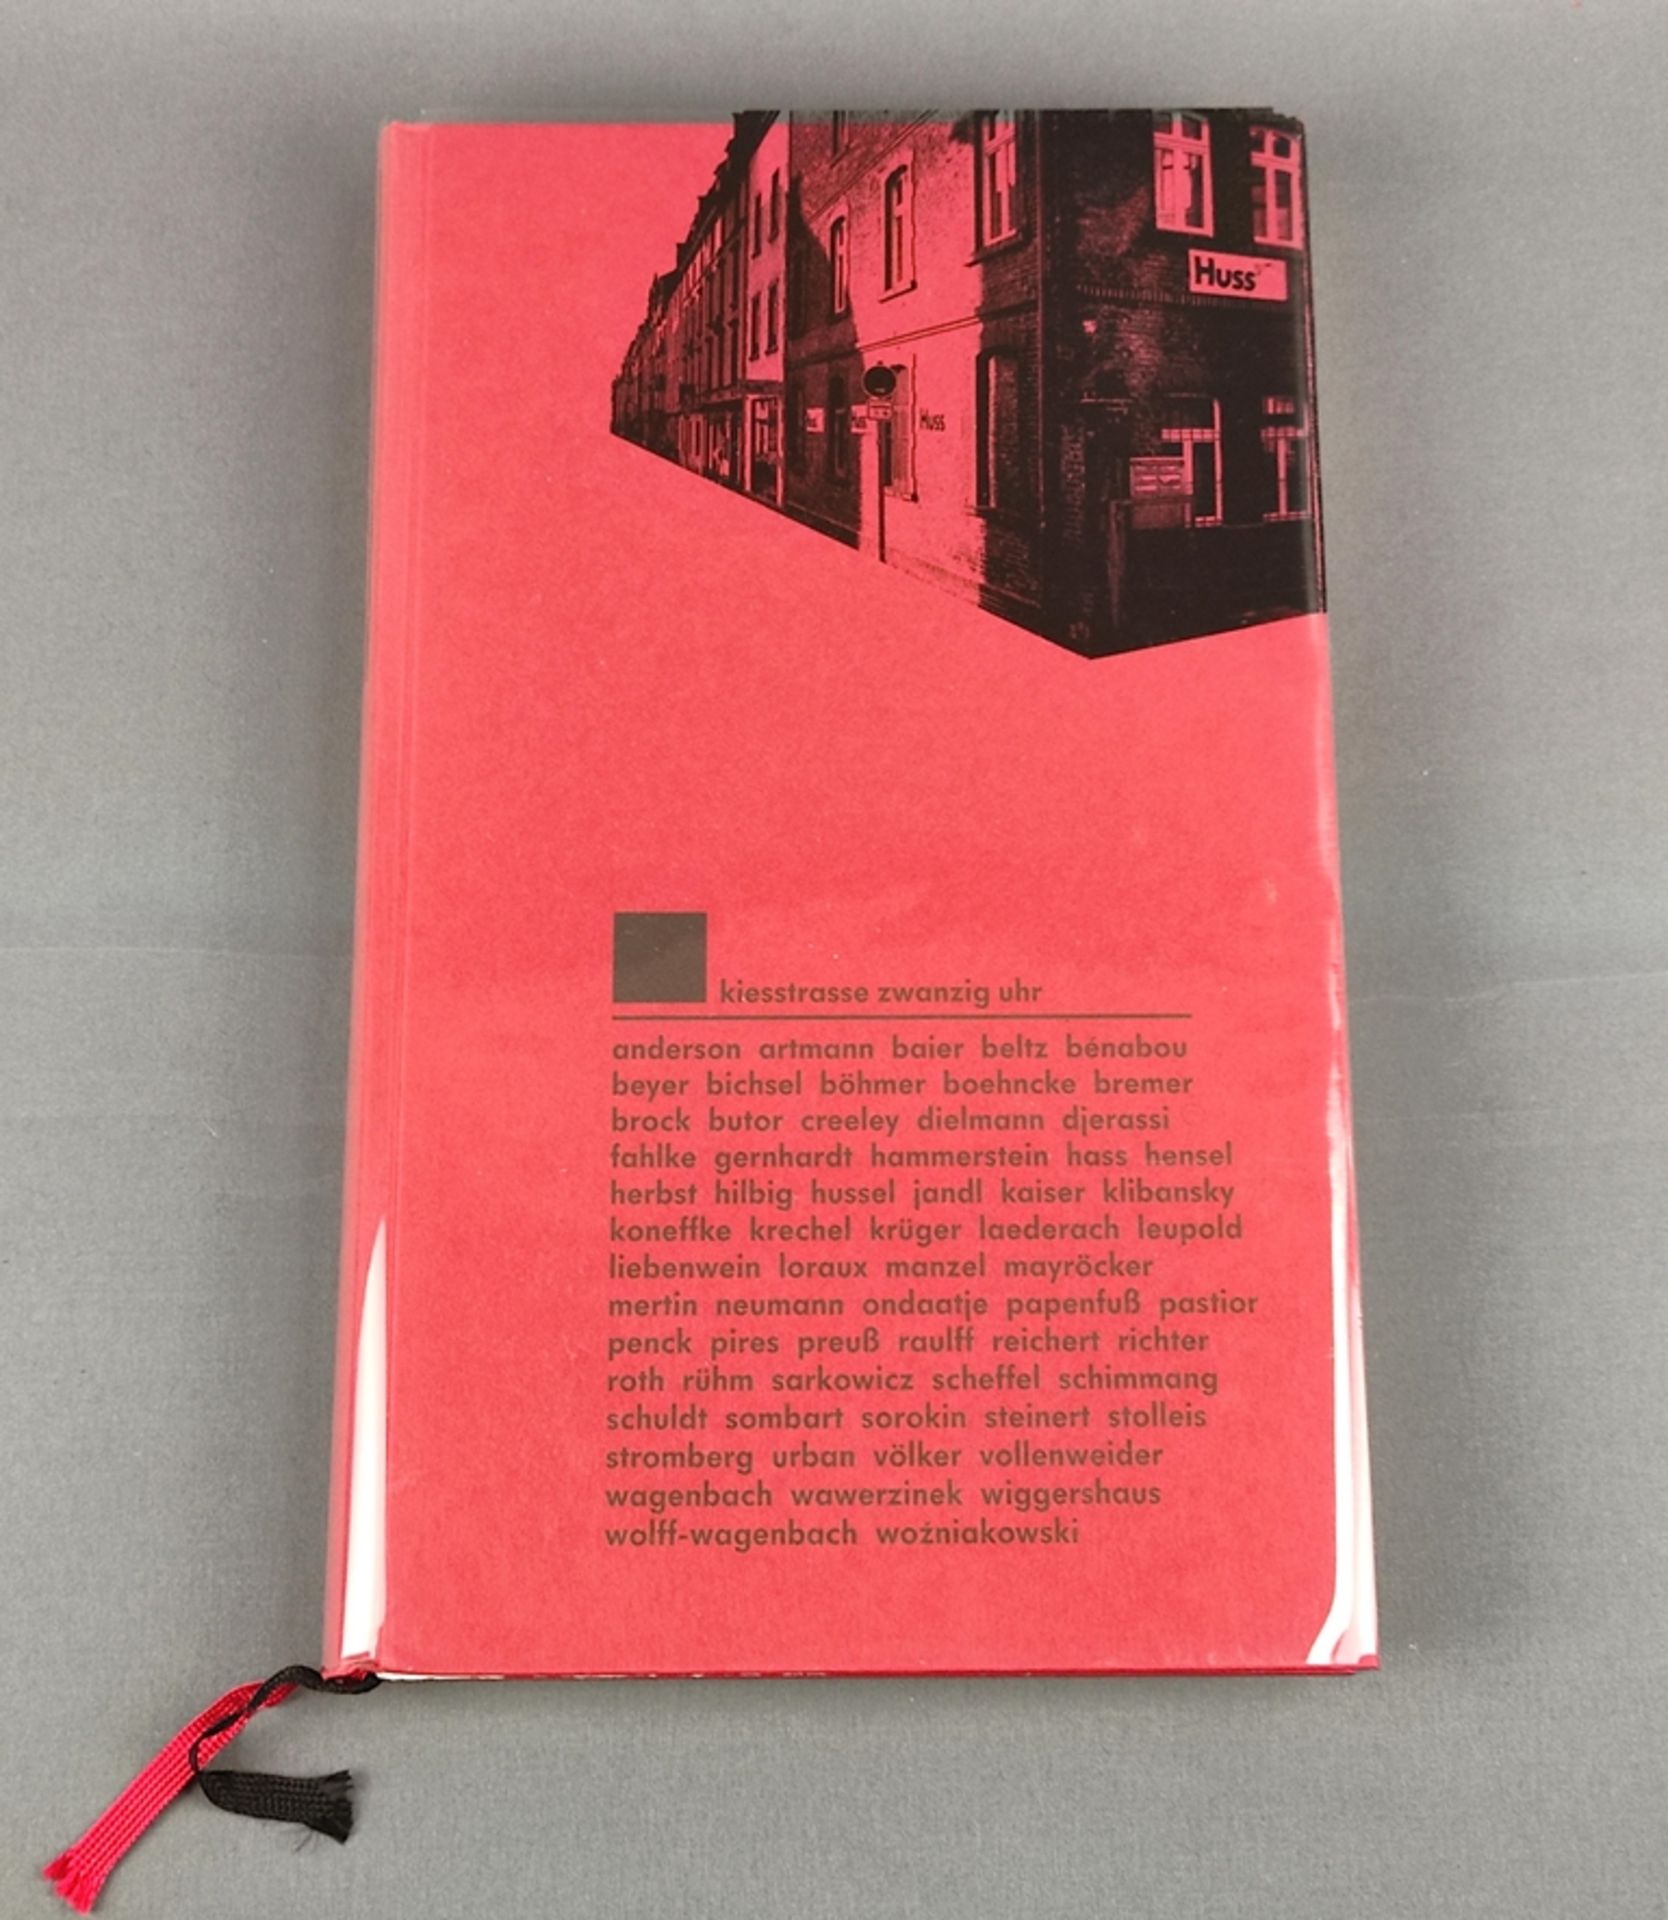 Penck, A.R. "Kiesstraße zwanzig Uhr", edited by Jürgen Lentes, Frankfurt, Husssche Universitätsbuch